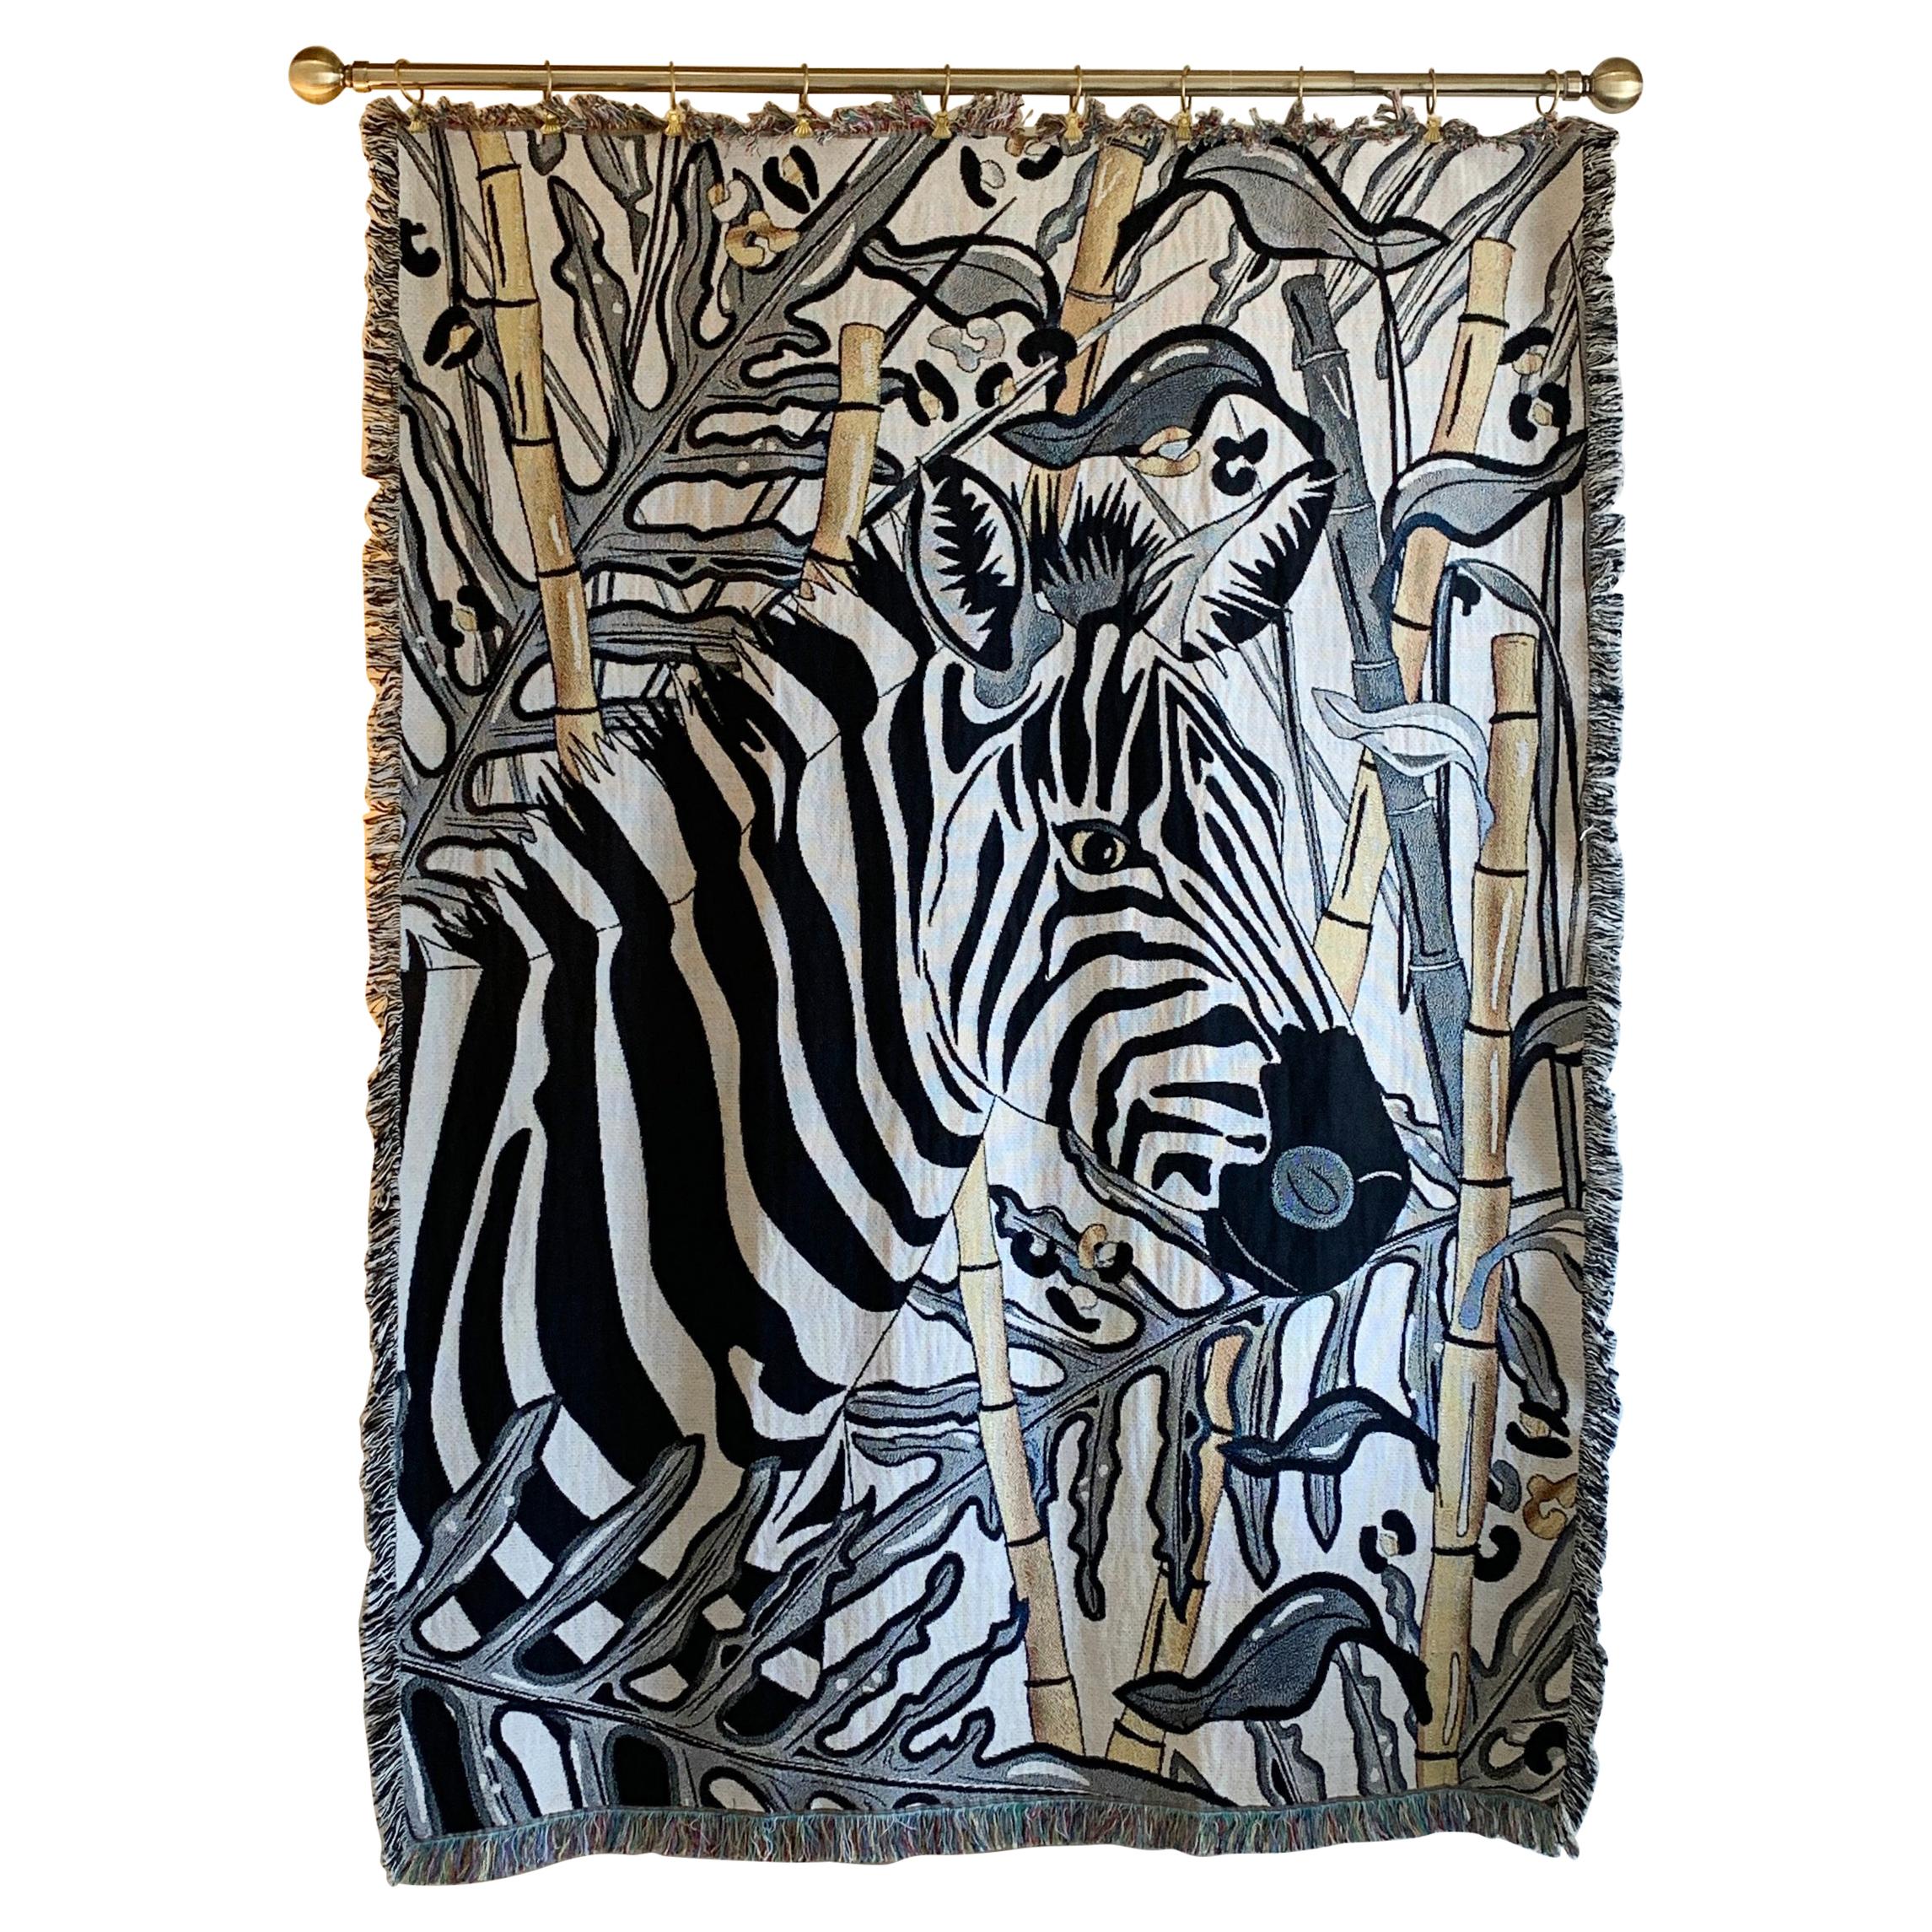 The Tropics Collection 'Zebra' Plaid tissé Monochrome et or